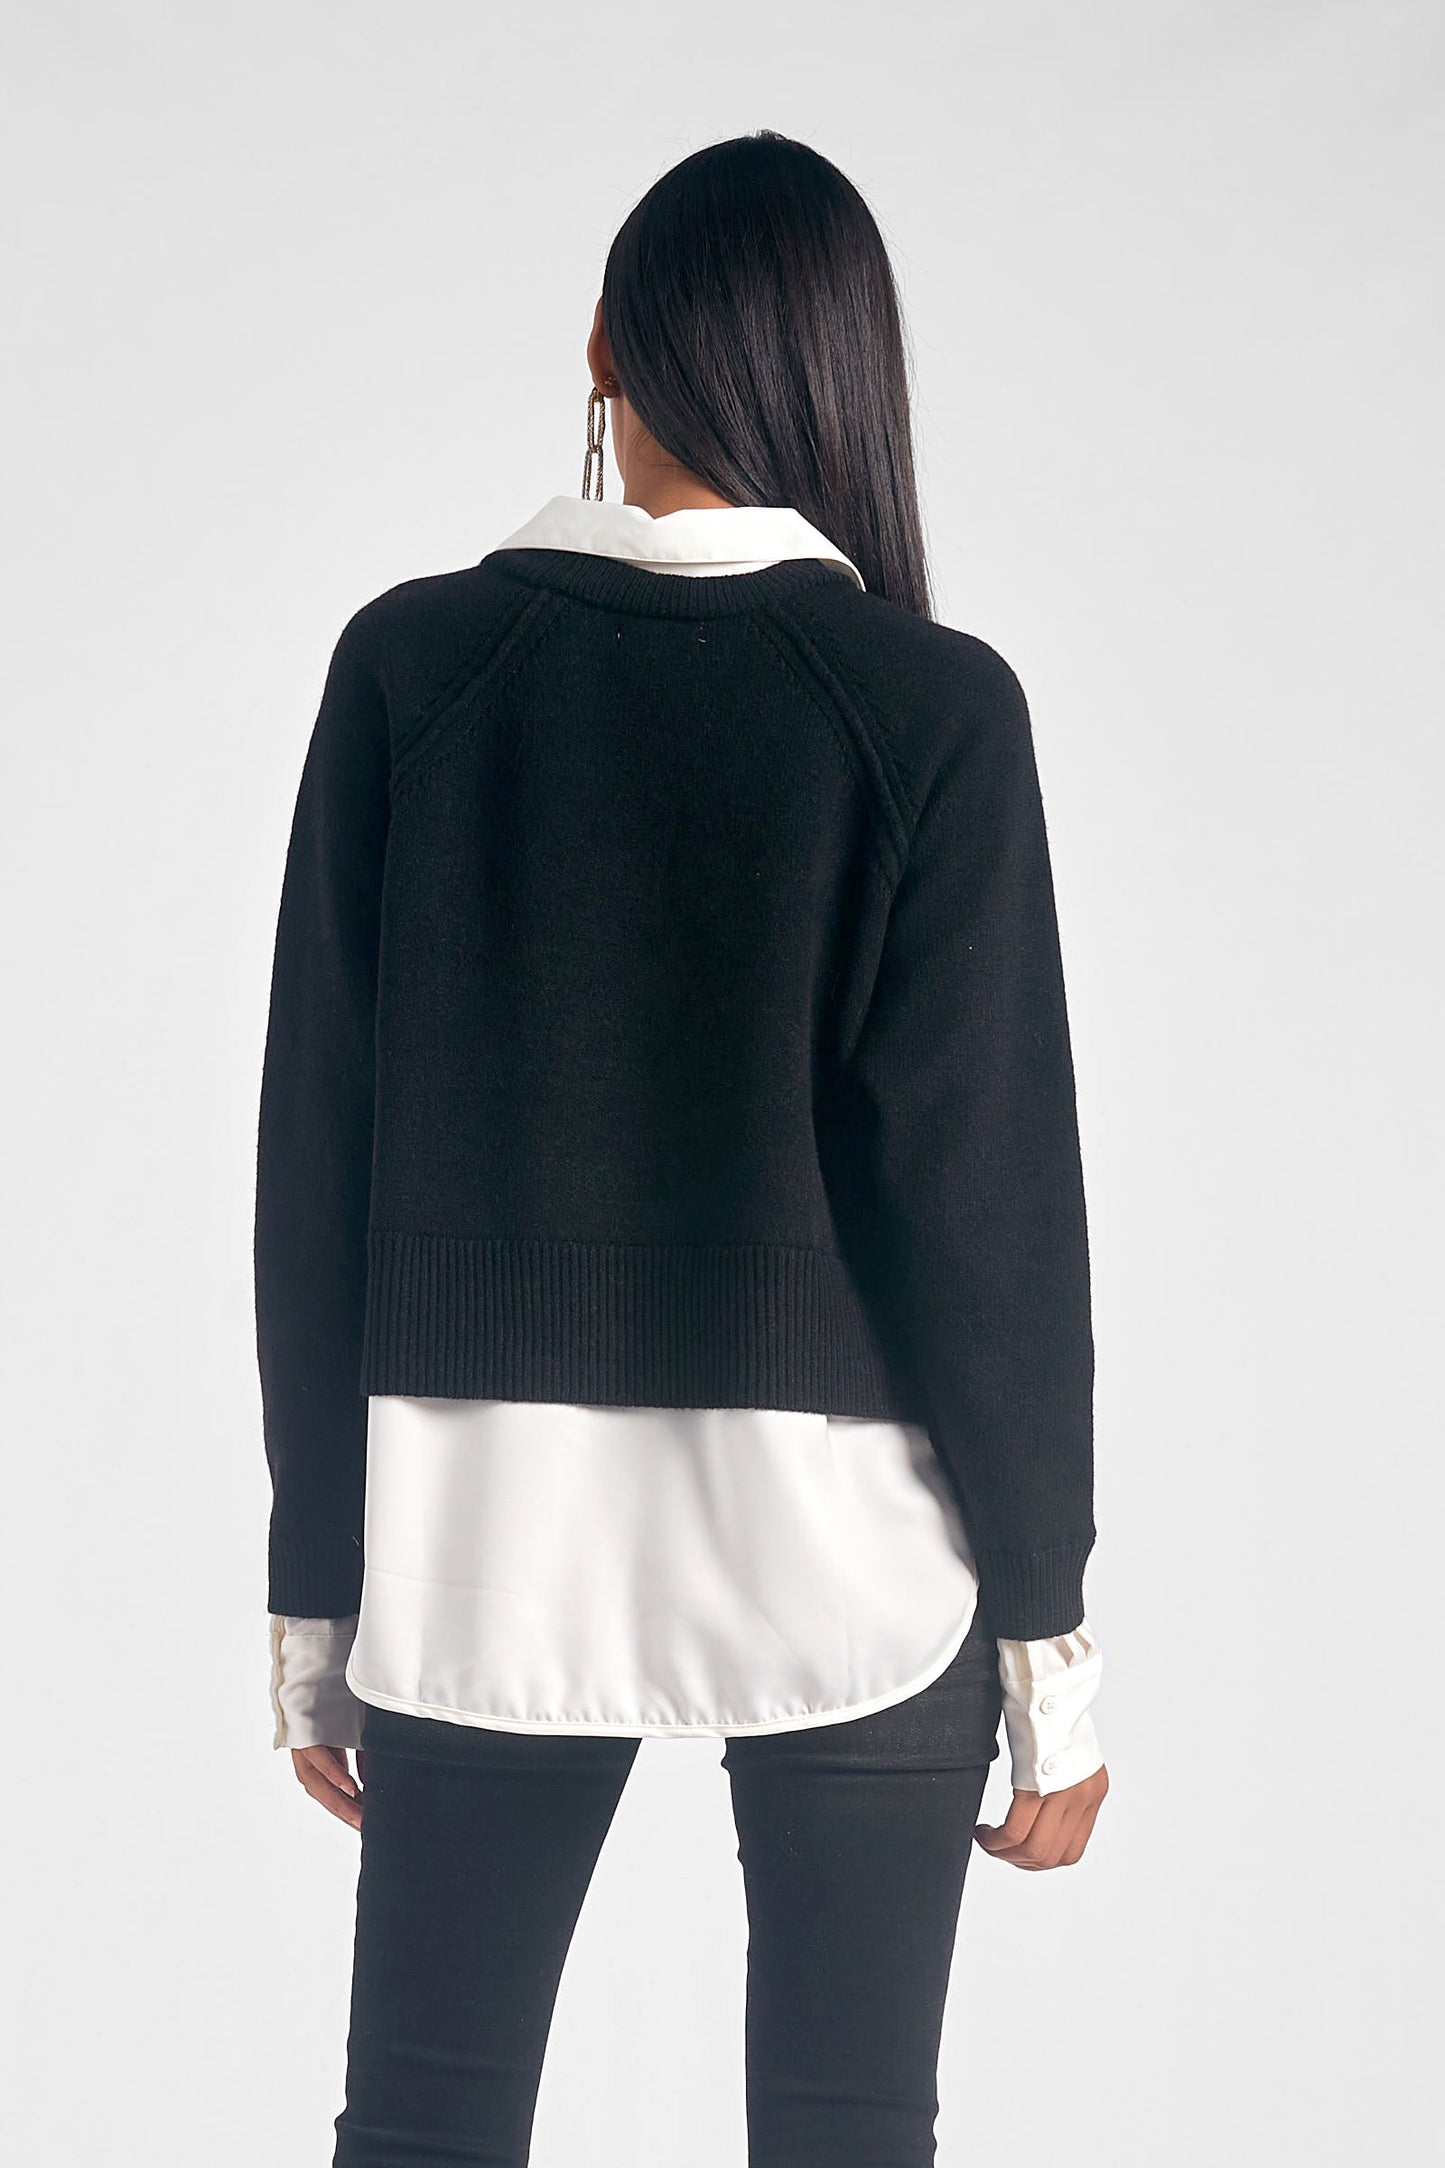 Black & White Sweater Shirt Combo